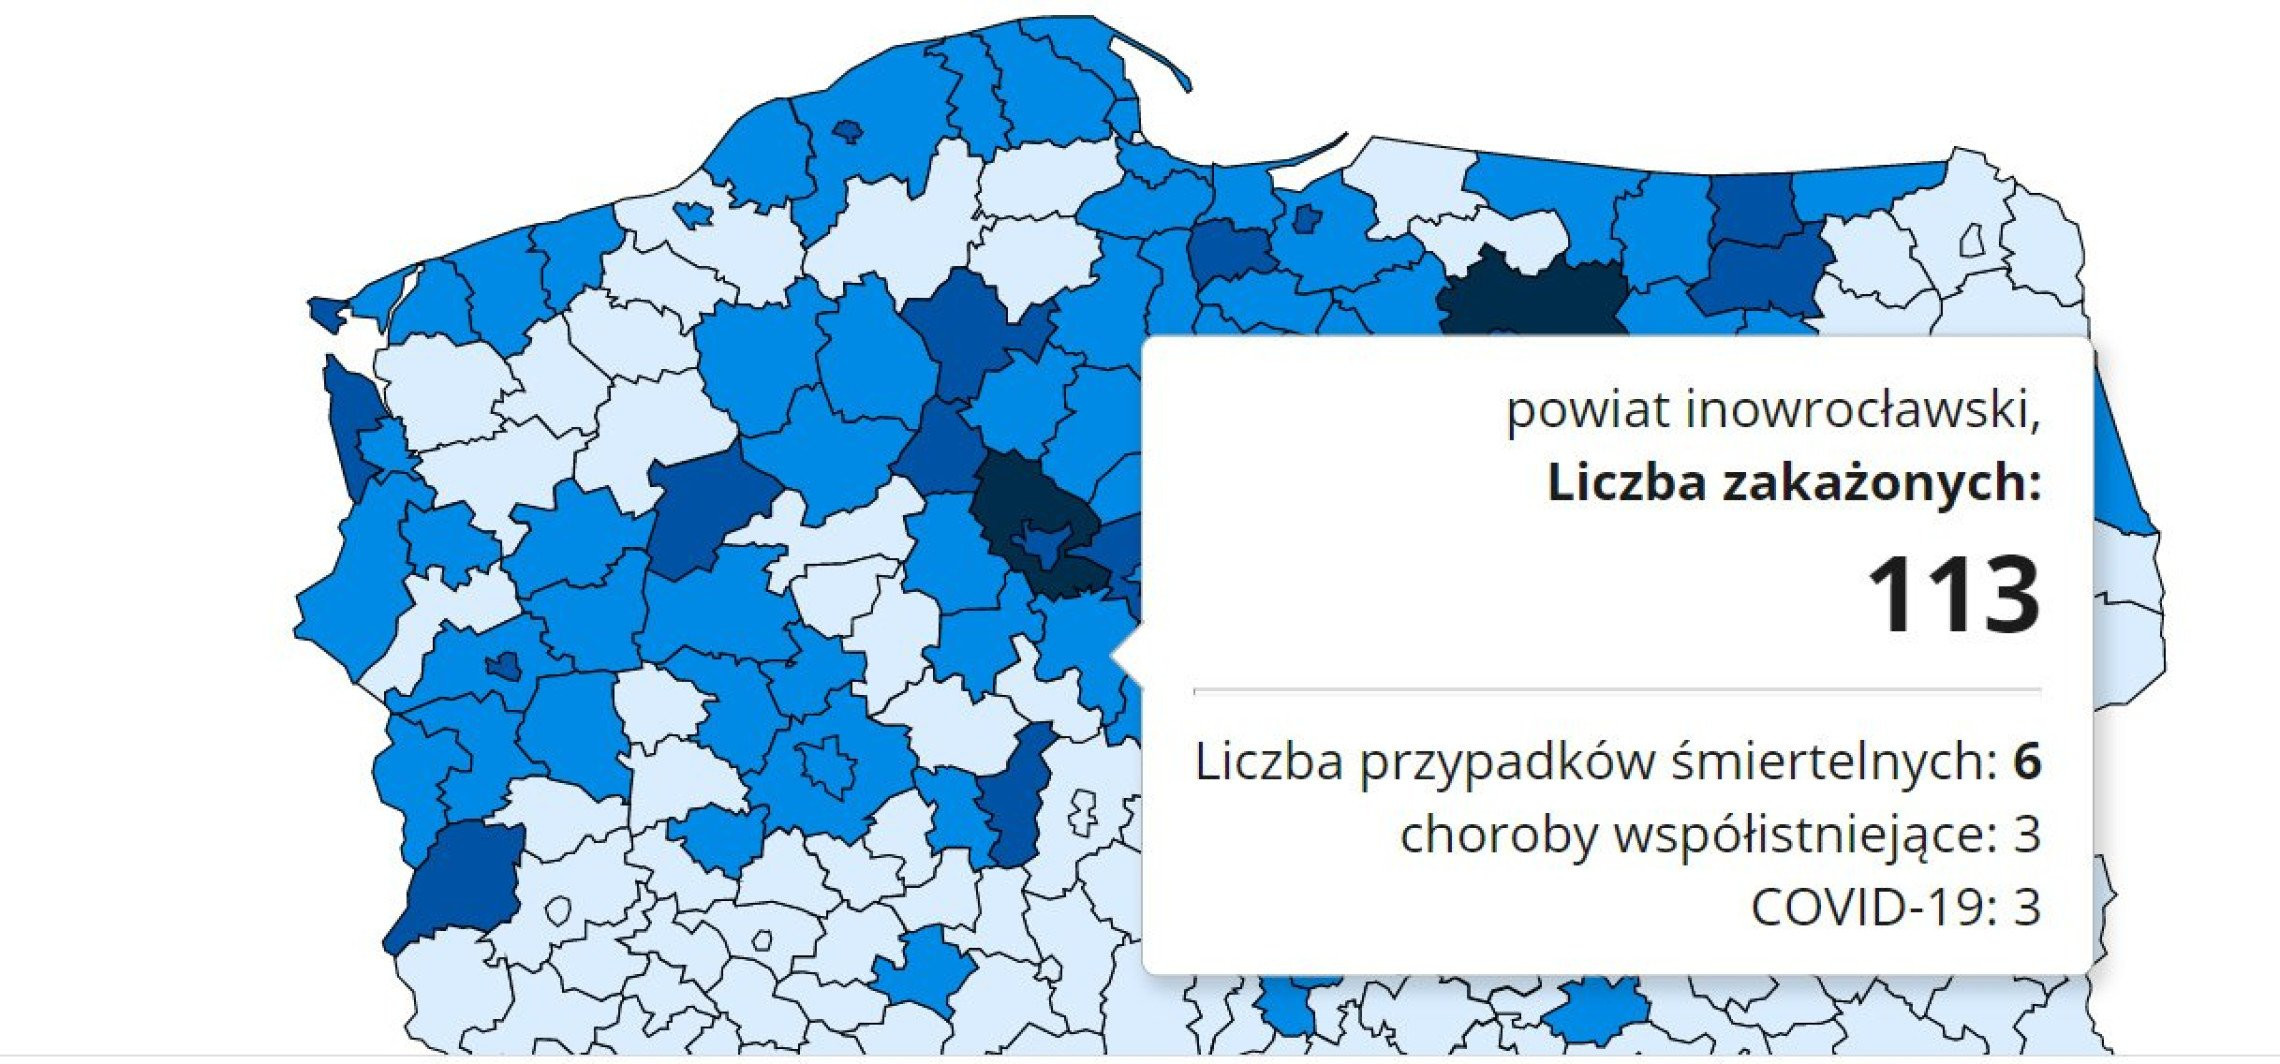 Inowrocław - Kolejny dzień z bardzo dużą liczbą zakażeń